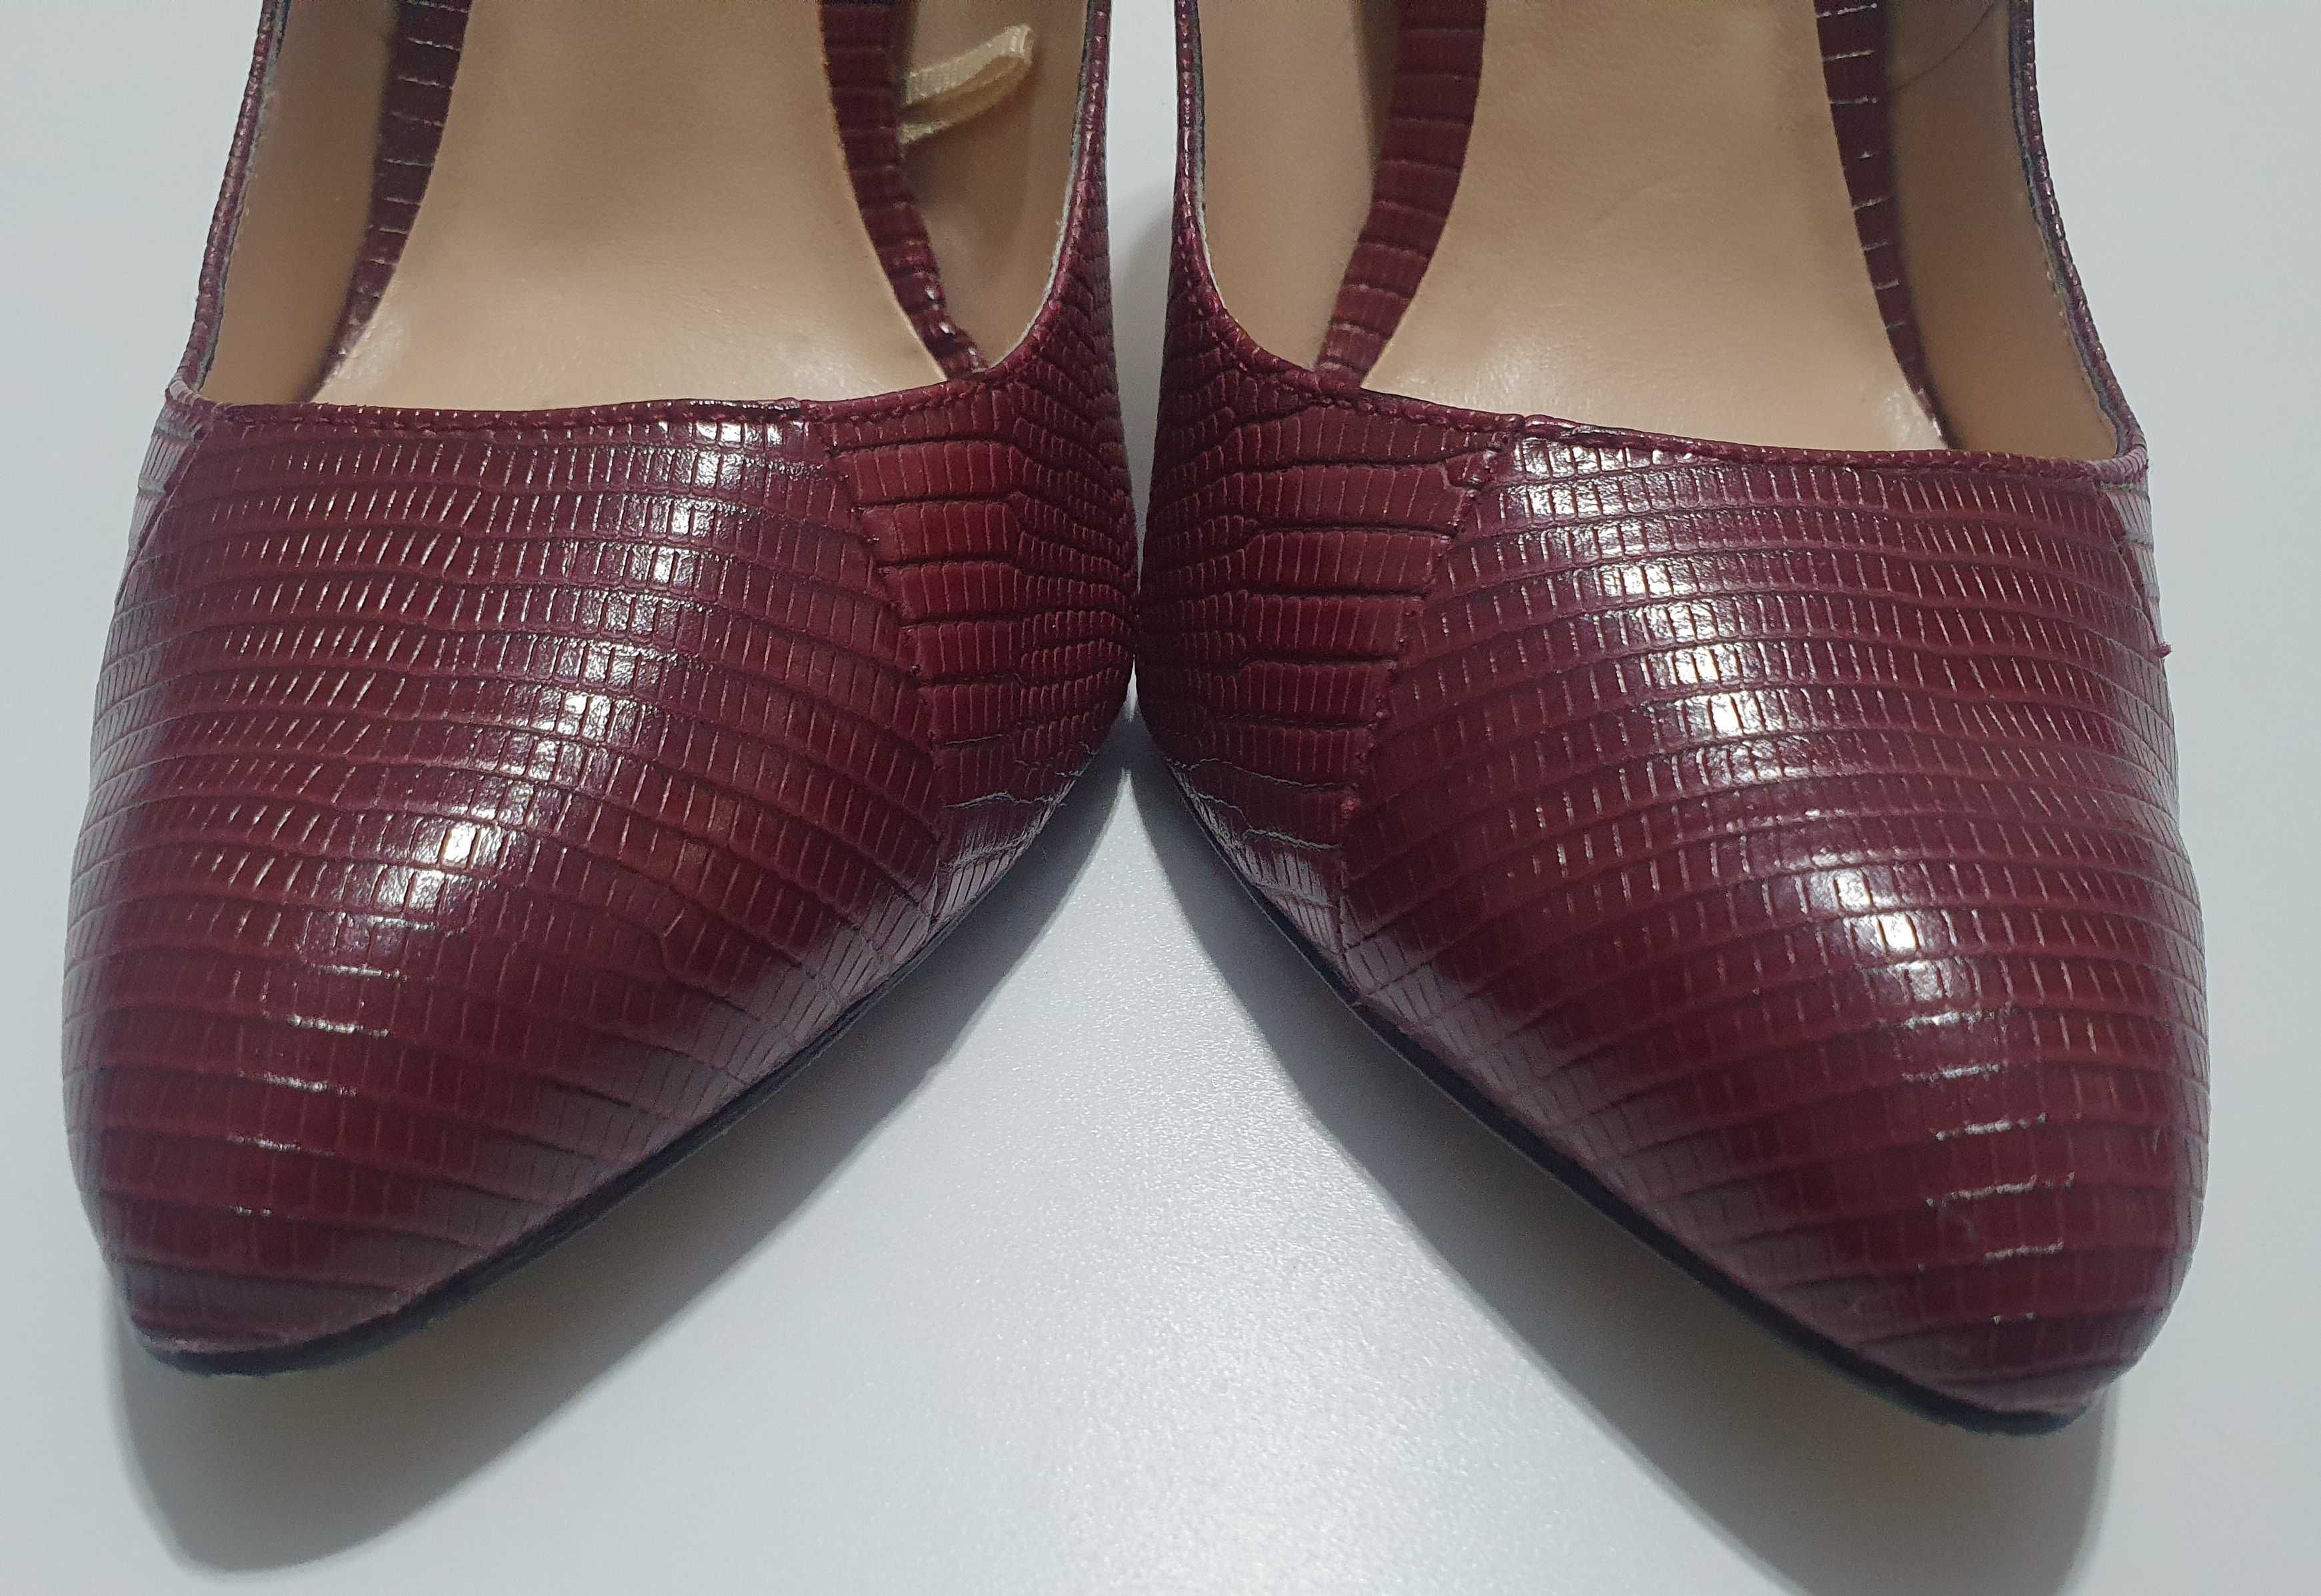 Pantofi Mango stiletto marimea 38 piele naturala toc 10 cm burgundy